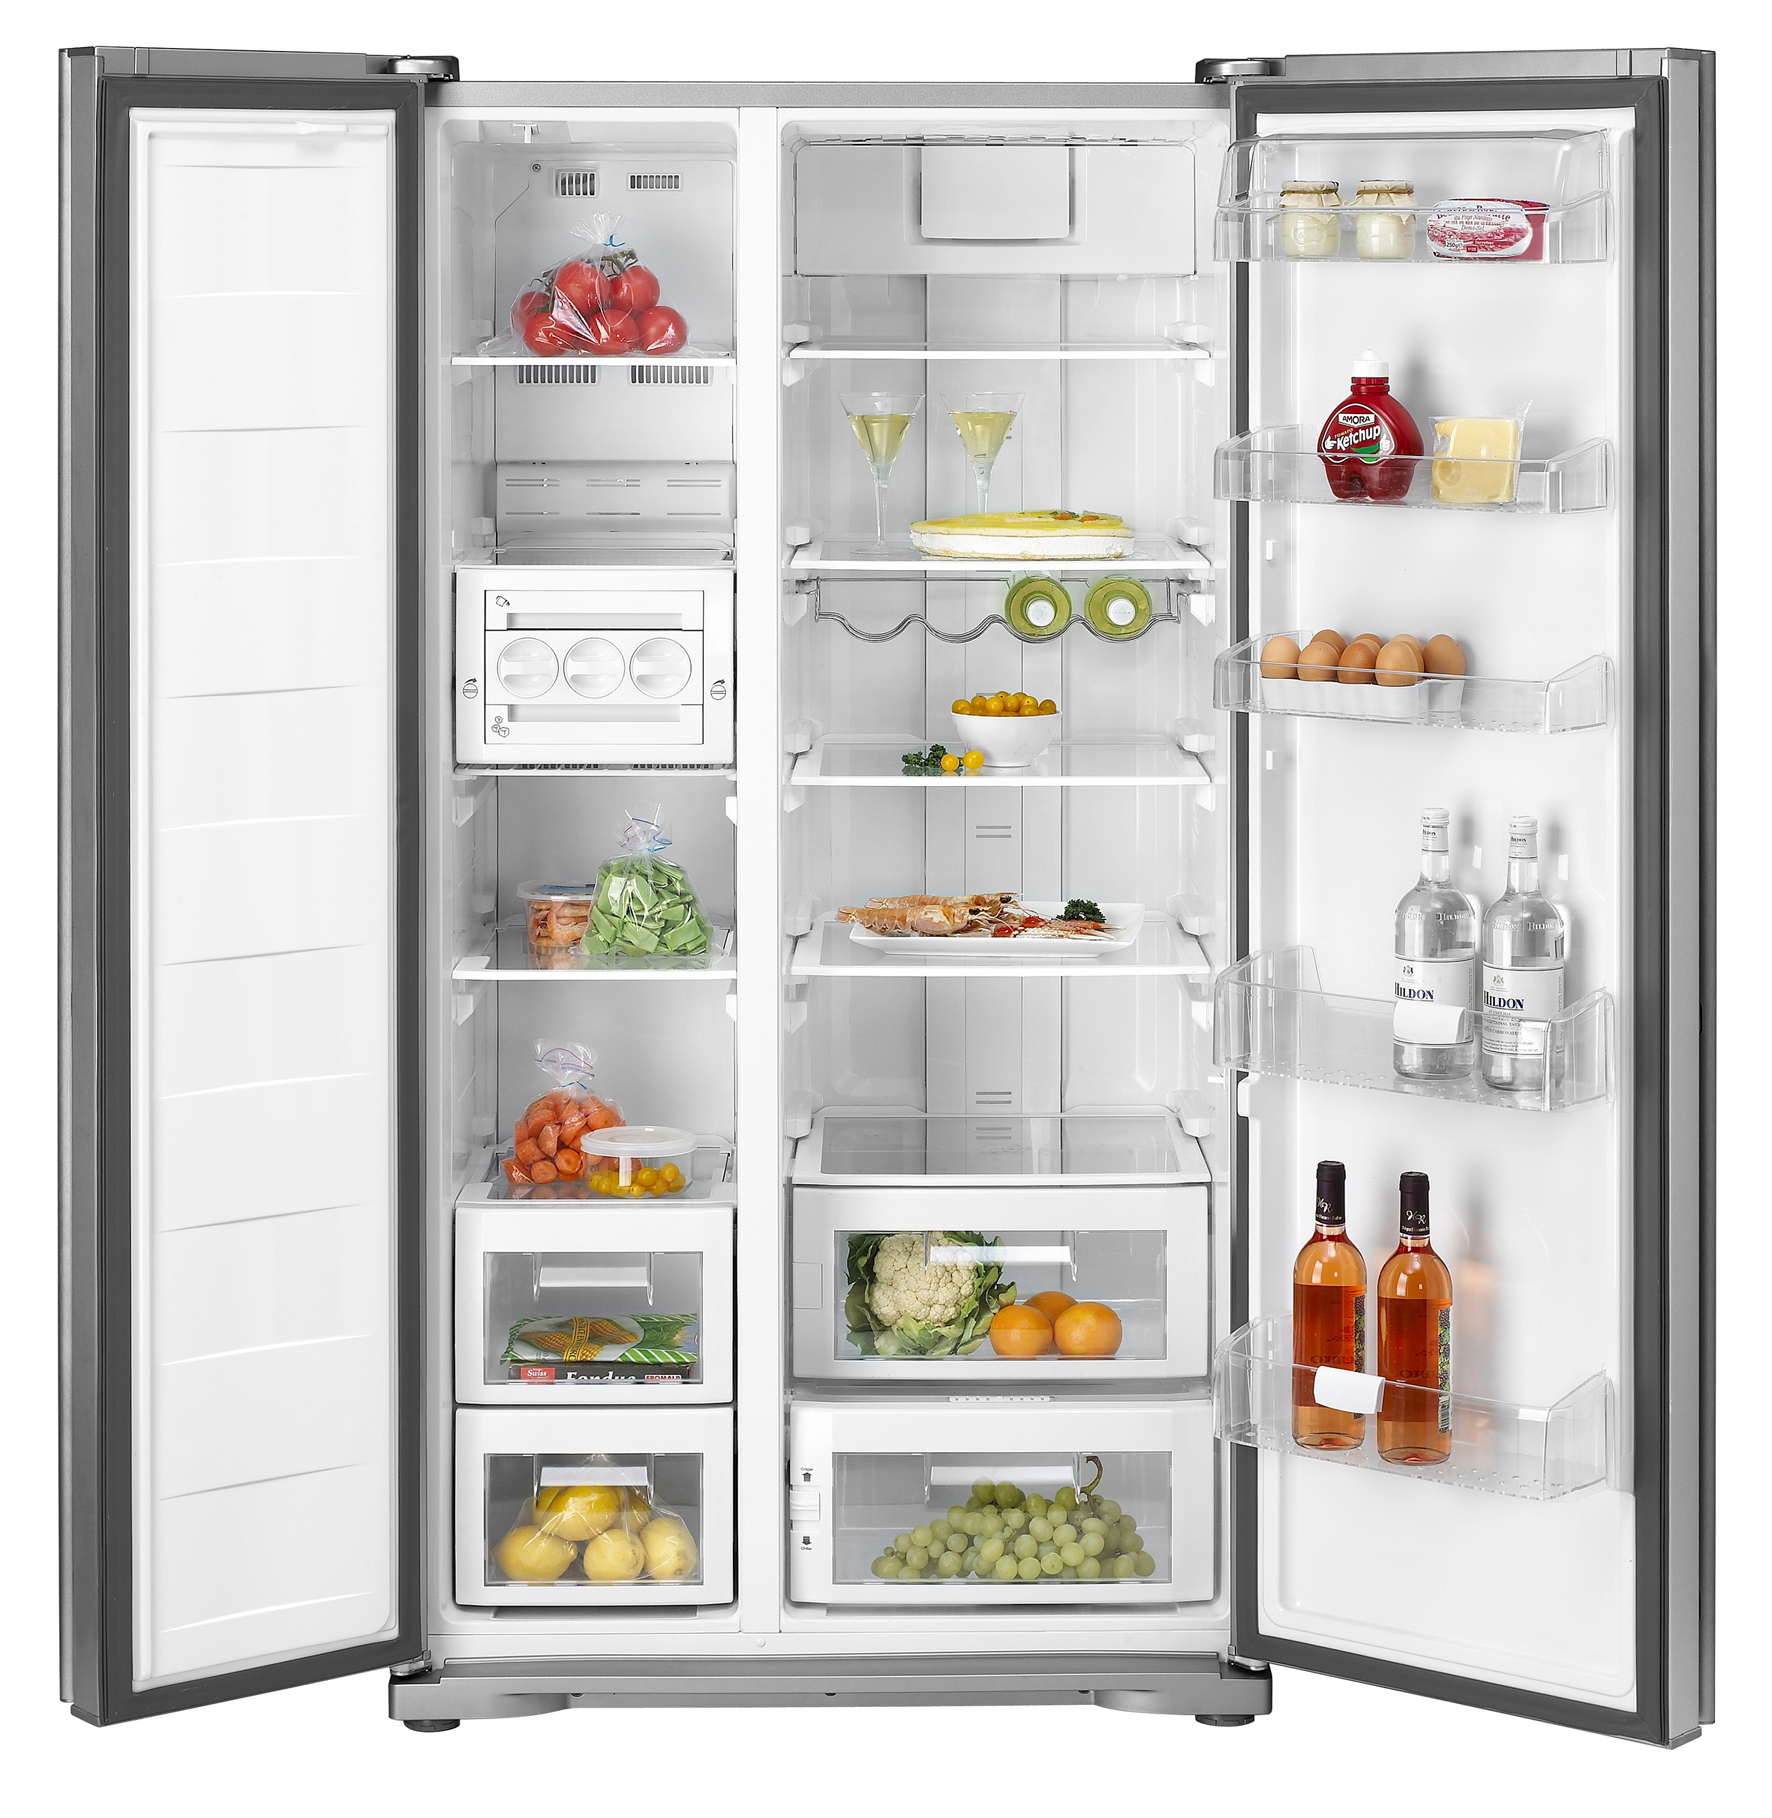 Tủ lạnh Hitachi: điểm nhấn nổi bật trong không gian bếp